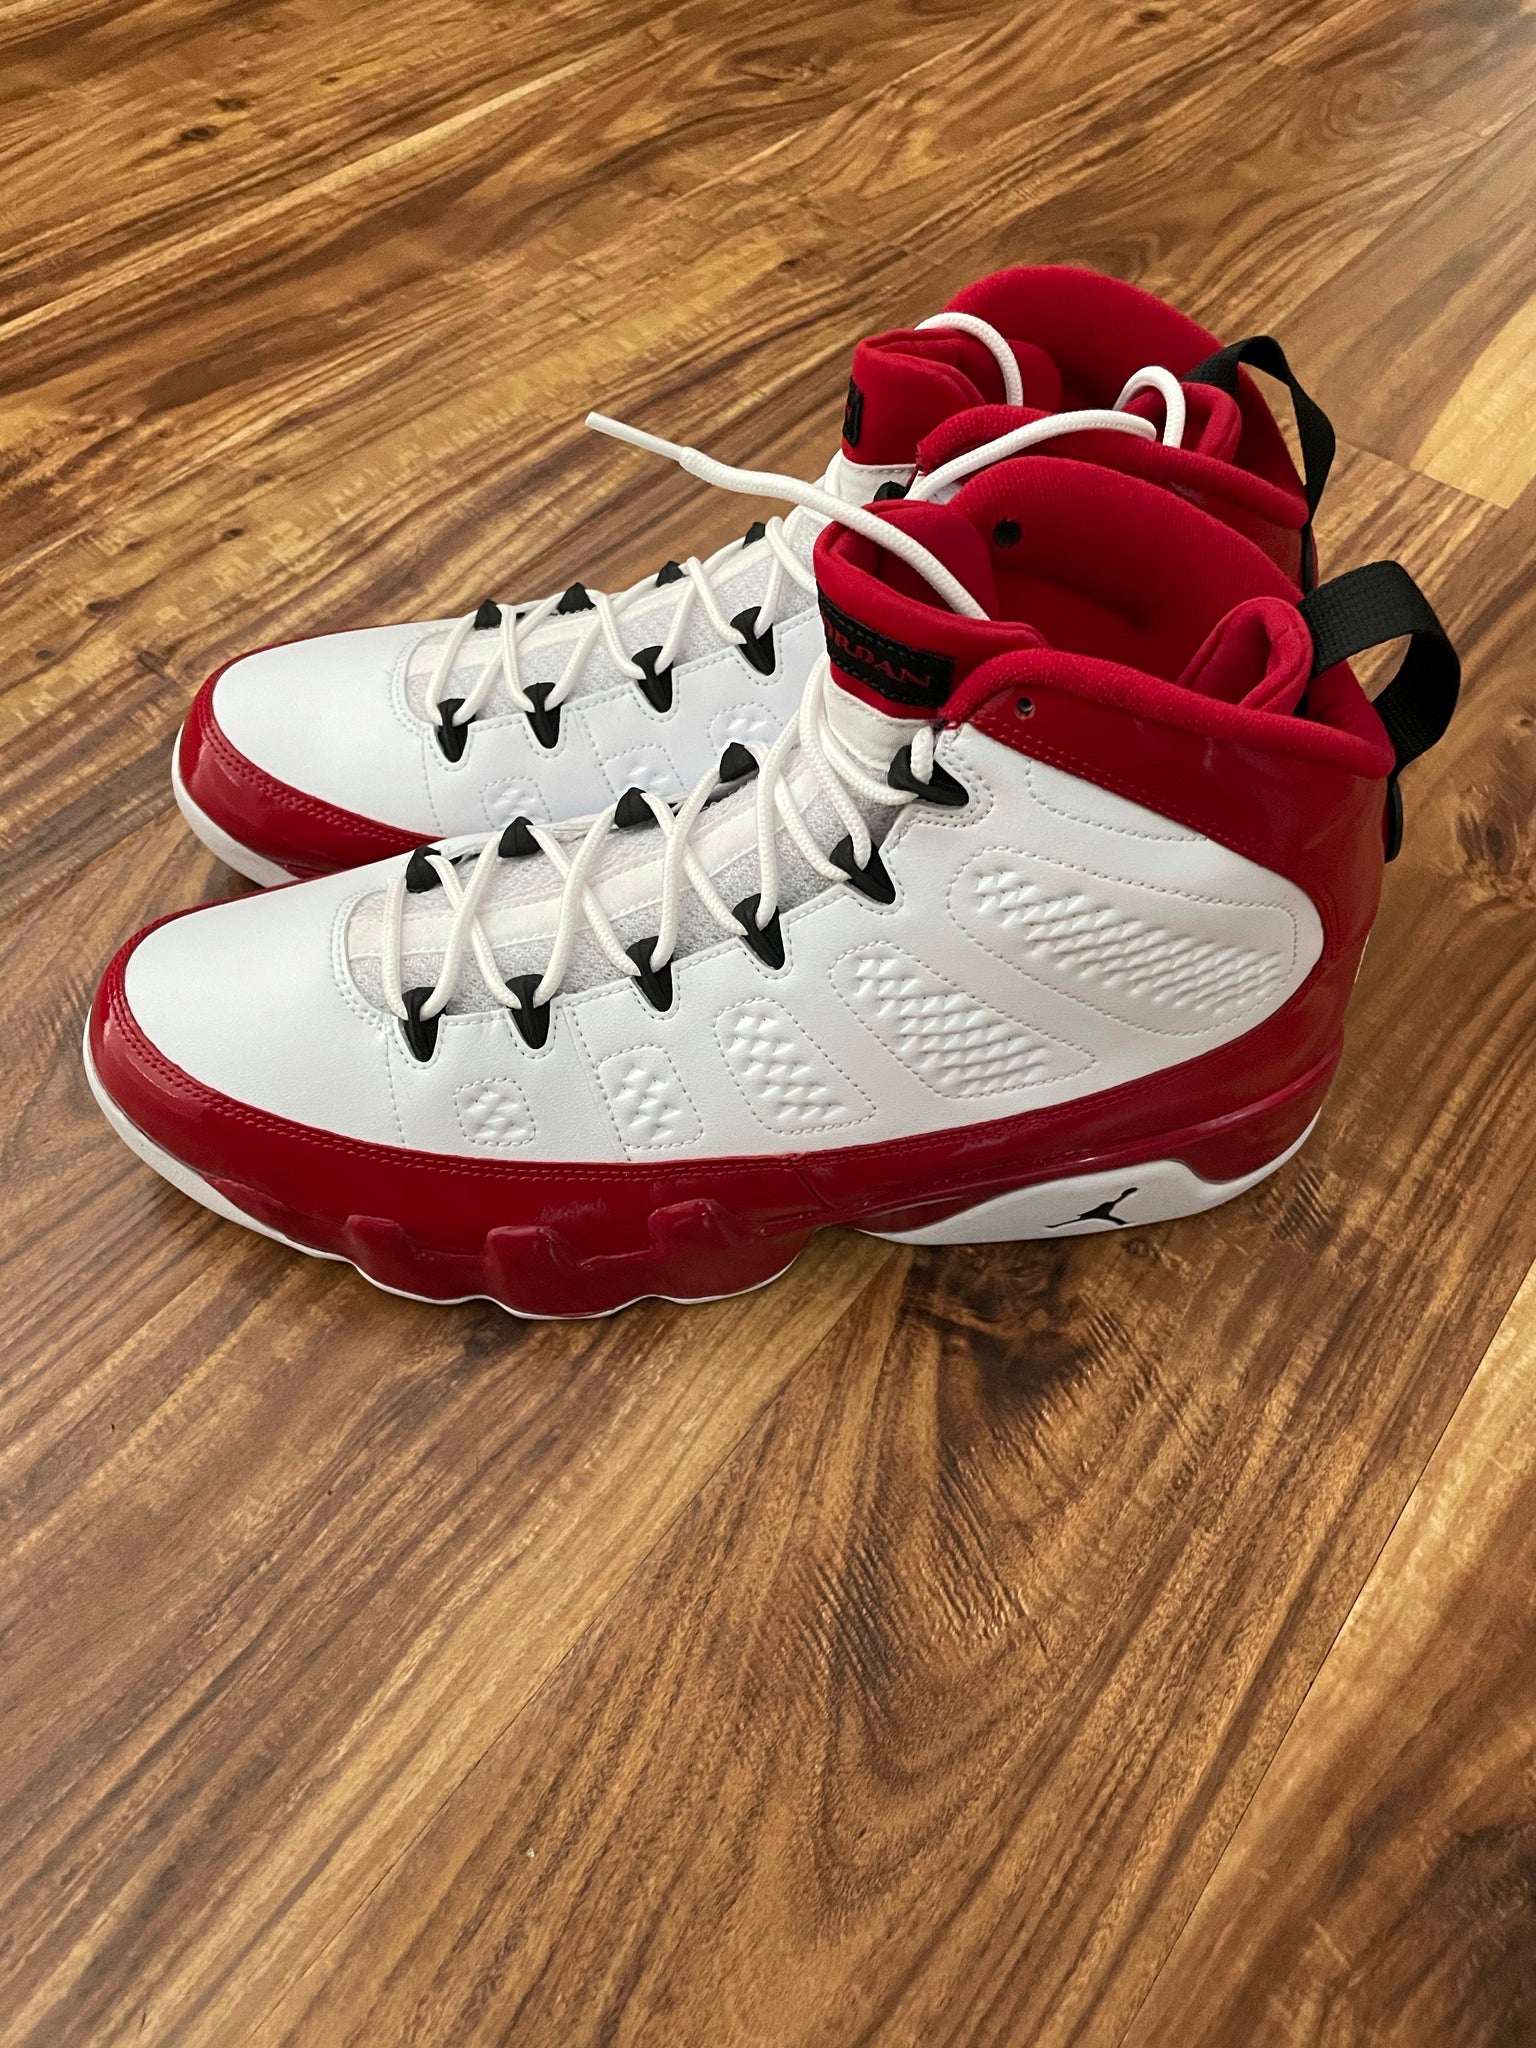 DS 2019 Jordan Retro 9 Gym Red